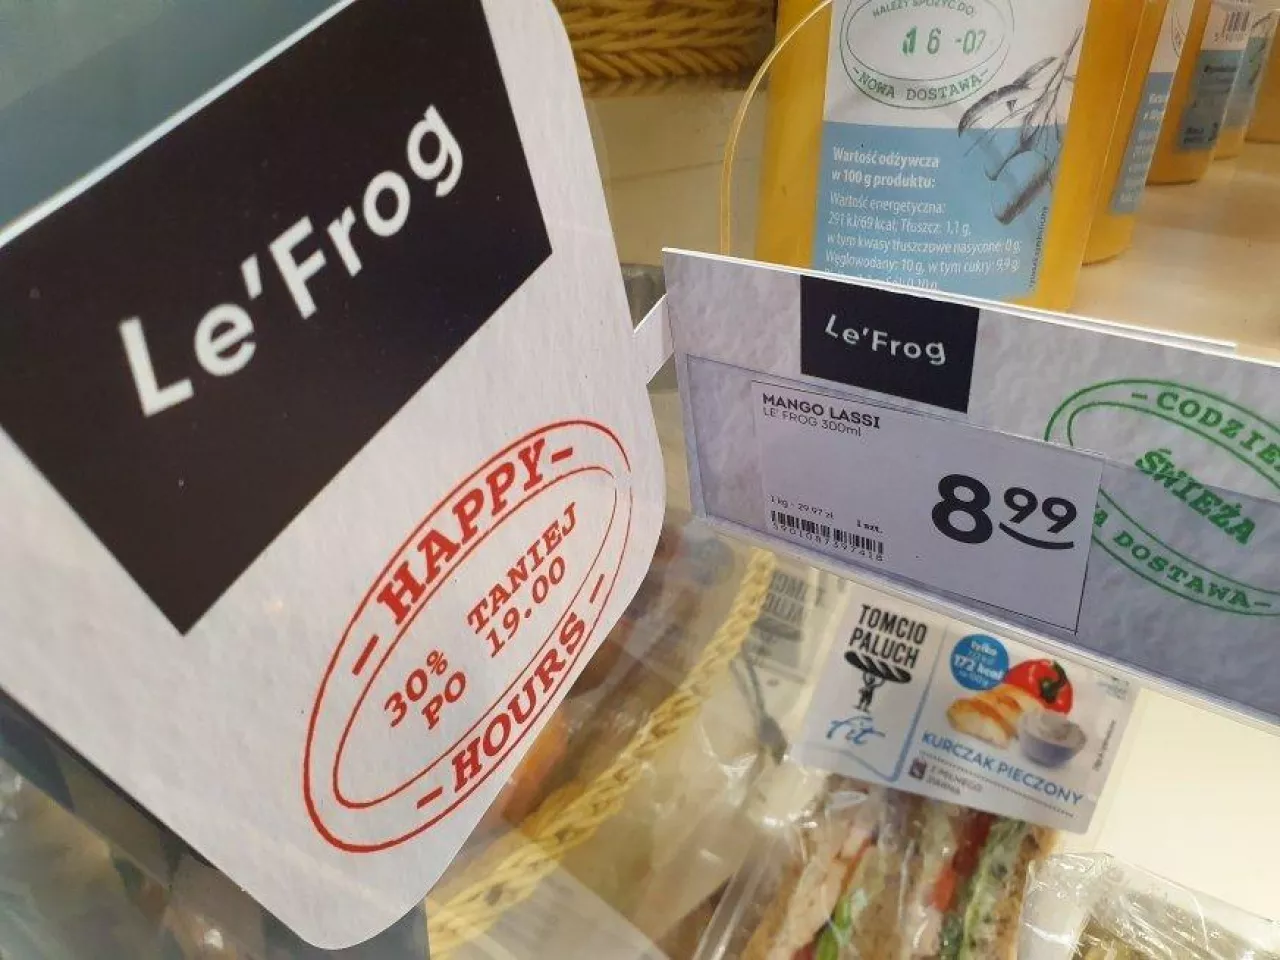 Produkty marki Le‘Frog aktualnie dostępne są w 22 sklepach sieci Żabka (fot. wiadomoscihandlowe.pl)